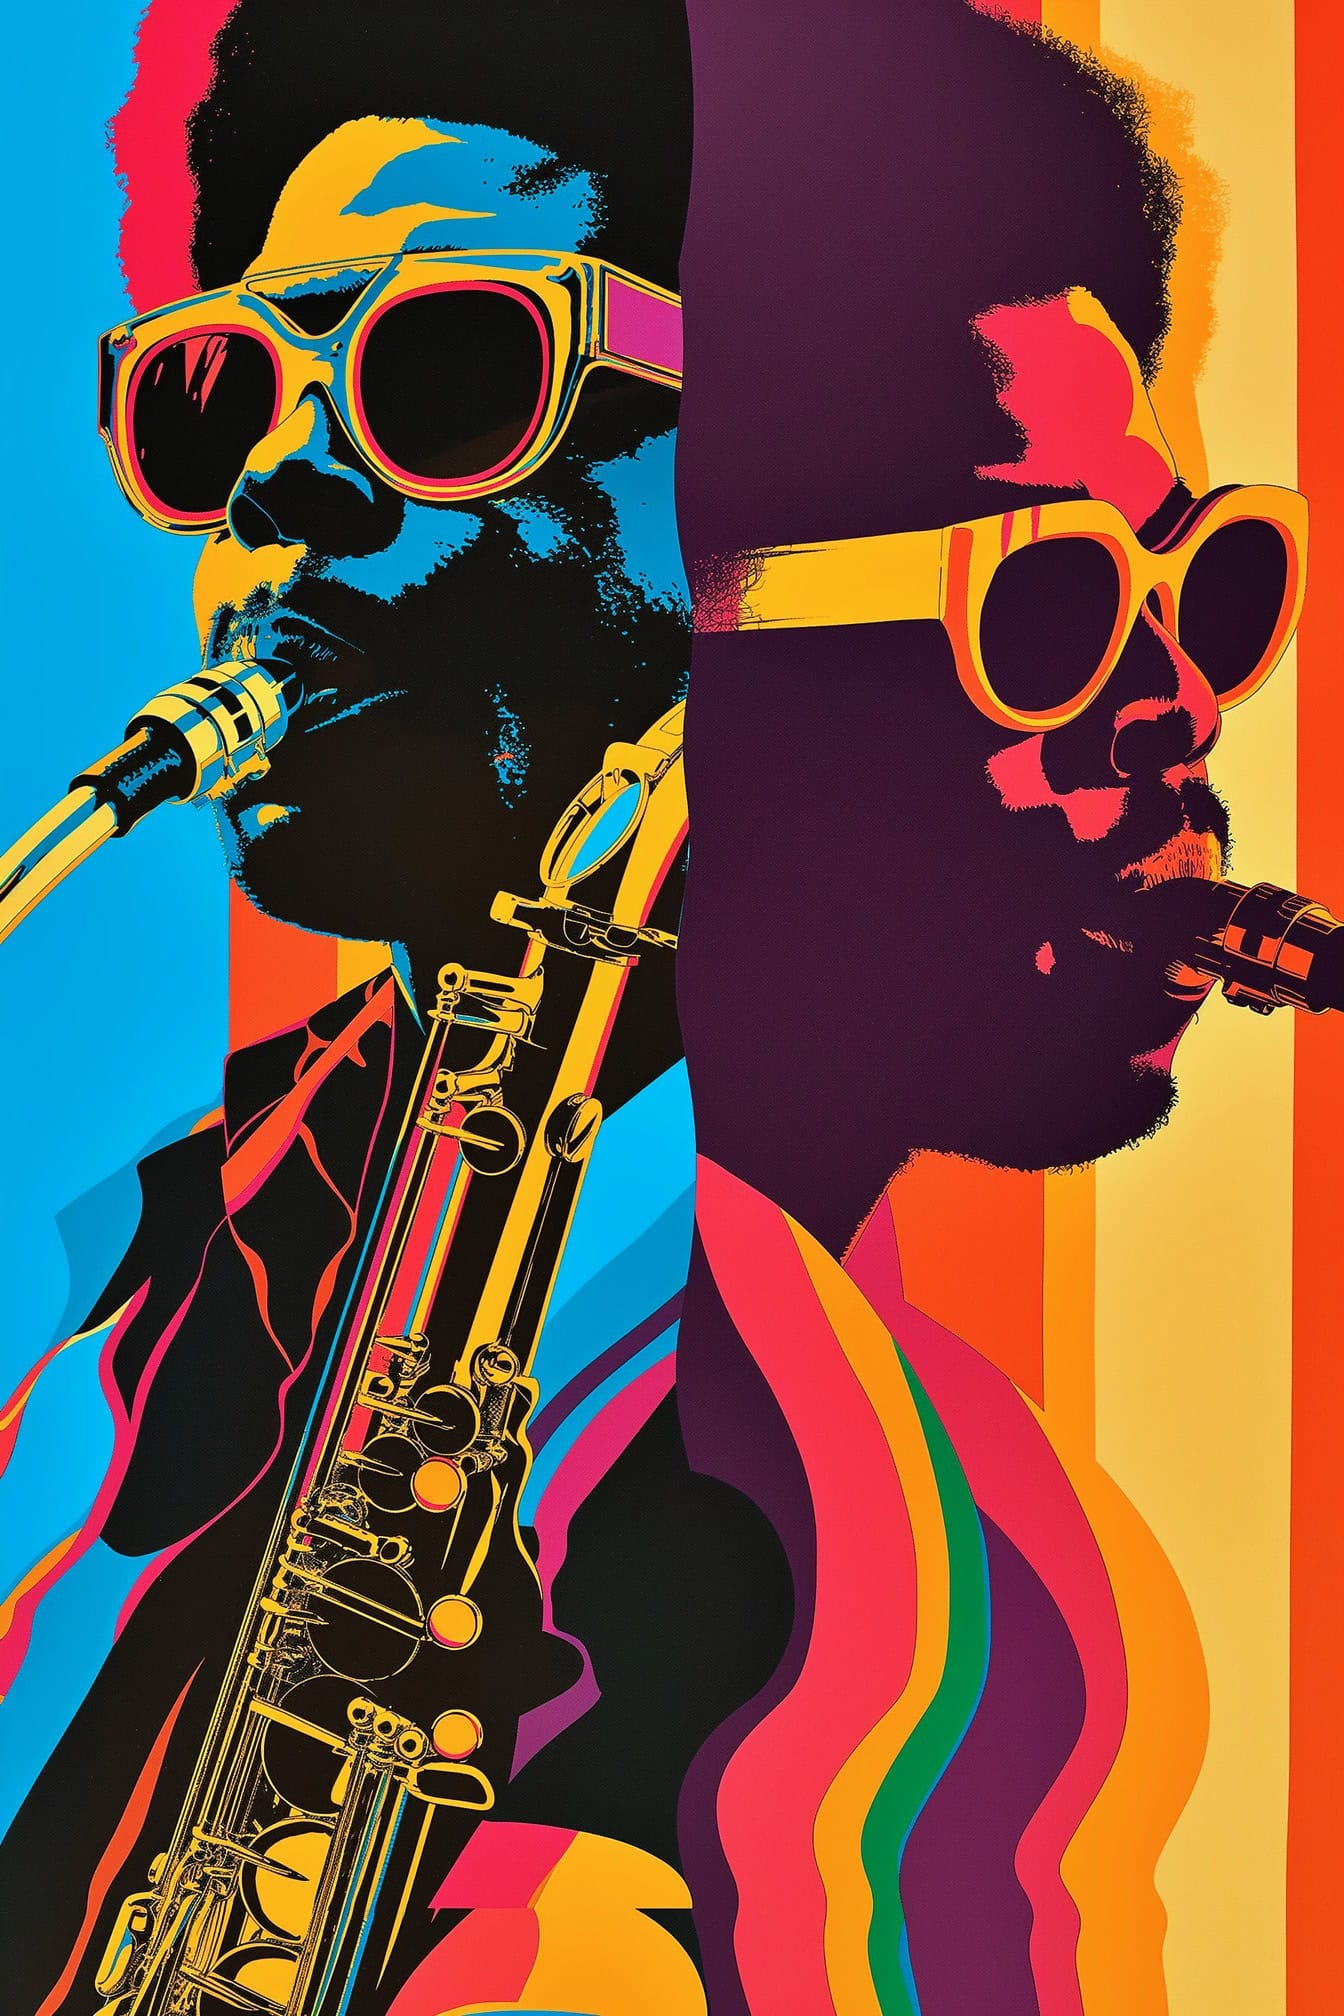 Plakat celebrujący afroamerykańską kulturę muzyczną z dwoma muzykami jazzowymi w okularach przeciwsłonecznych i saksofonem